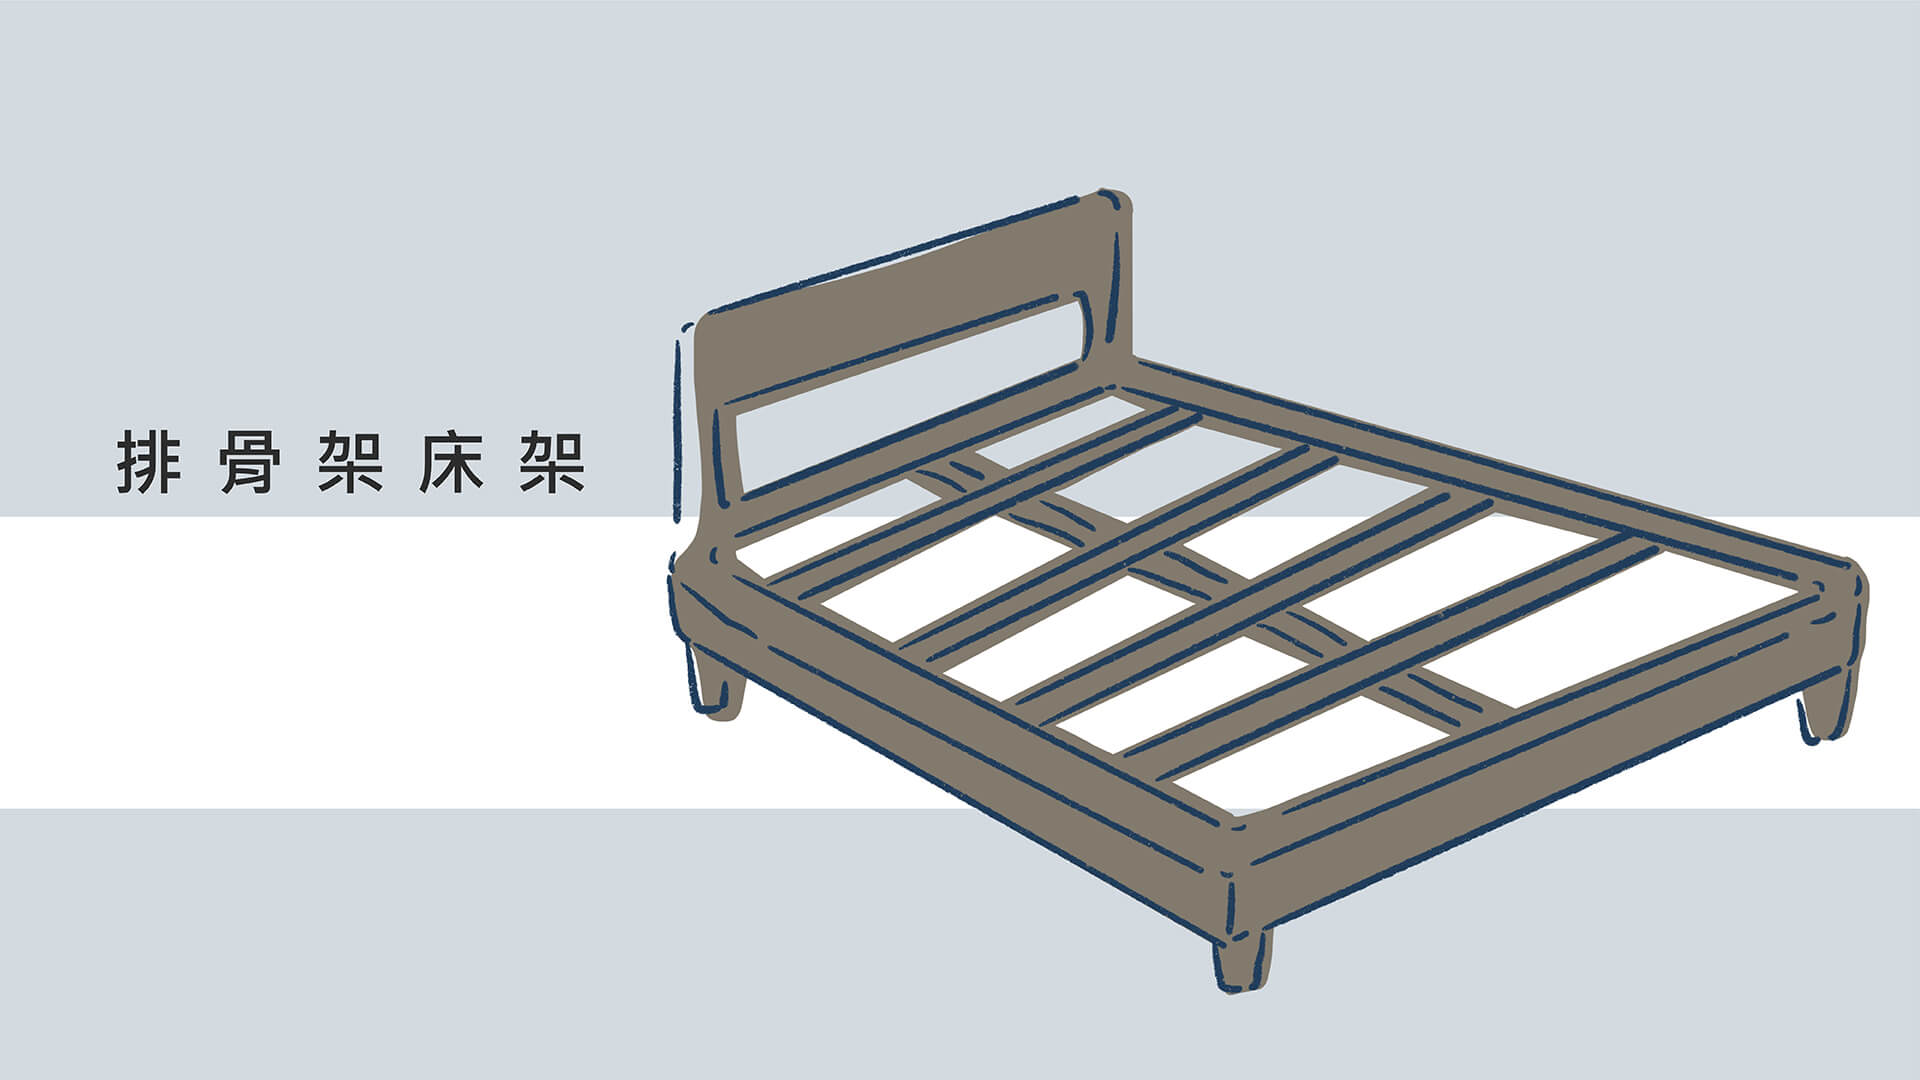 排骨式是利用木板排列間隔構成，屬於相當透氣的床架類型，但可能出現床墊變形或下陷的情況